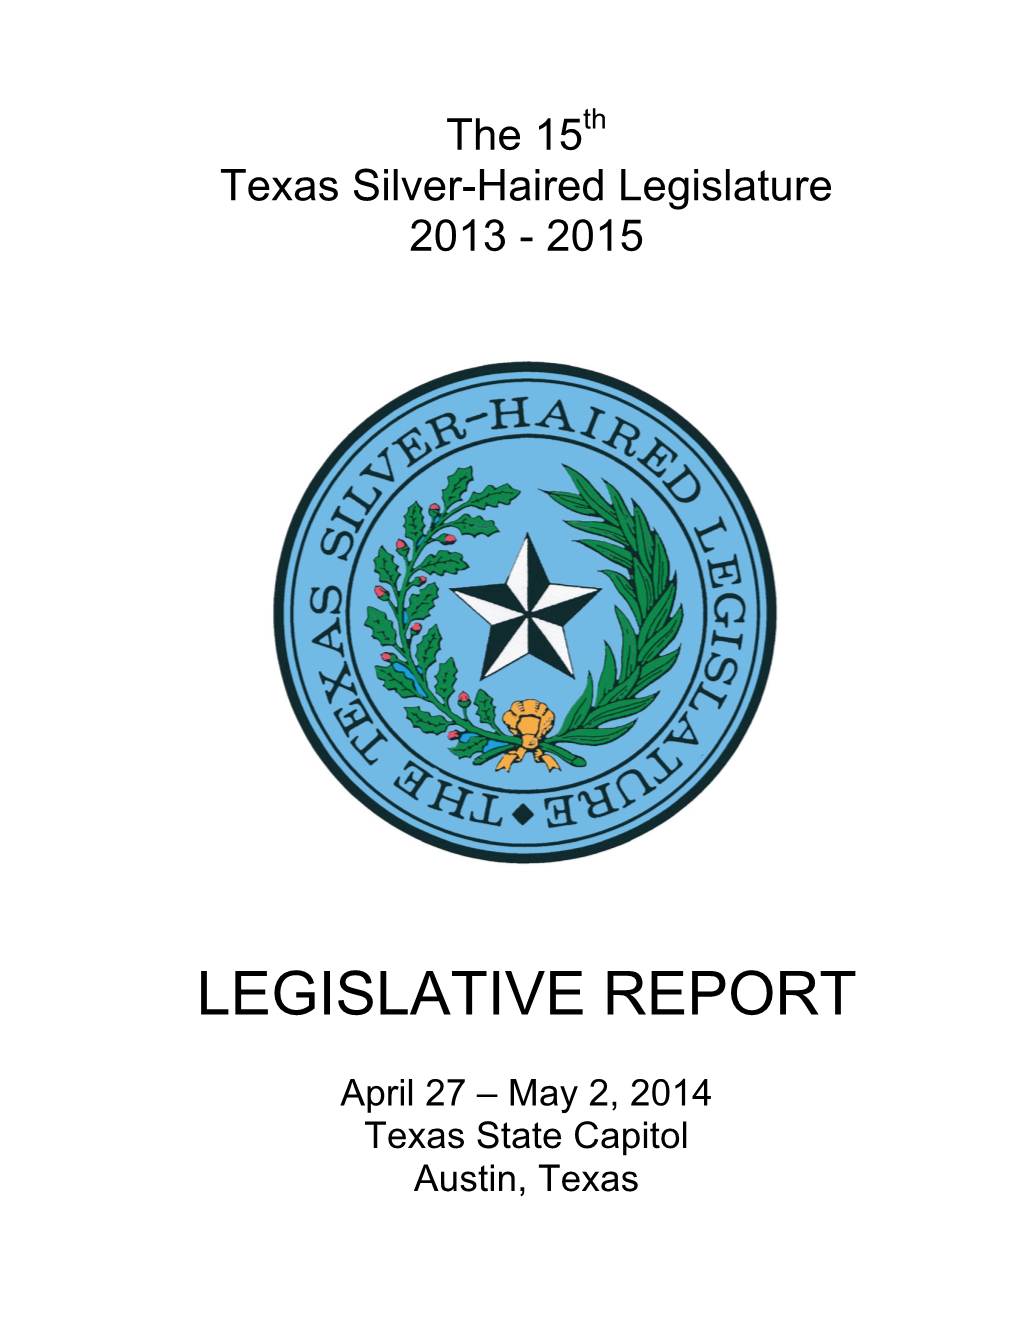 The 15Th TSHL Legislative Report